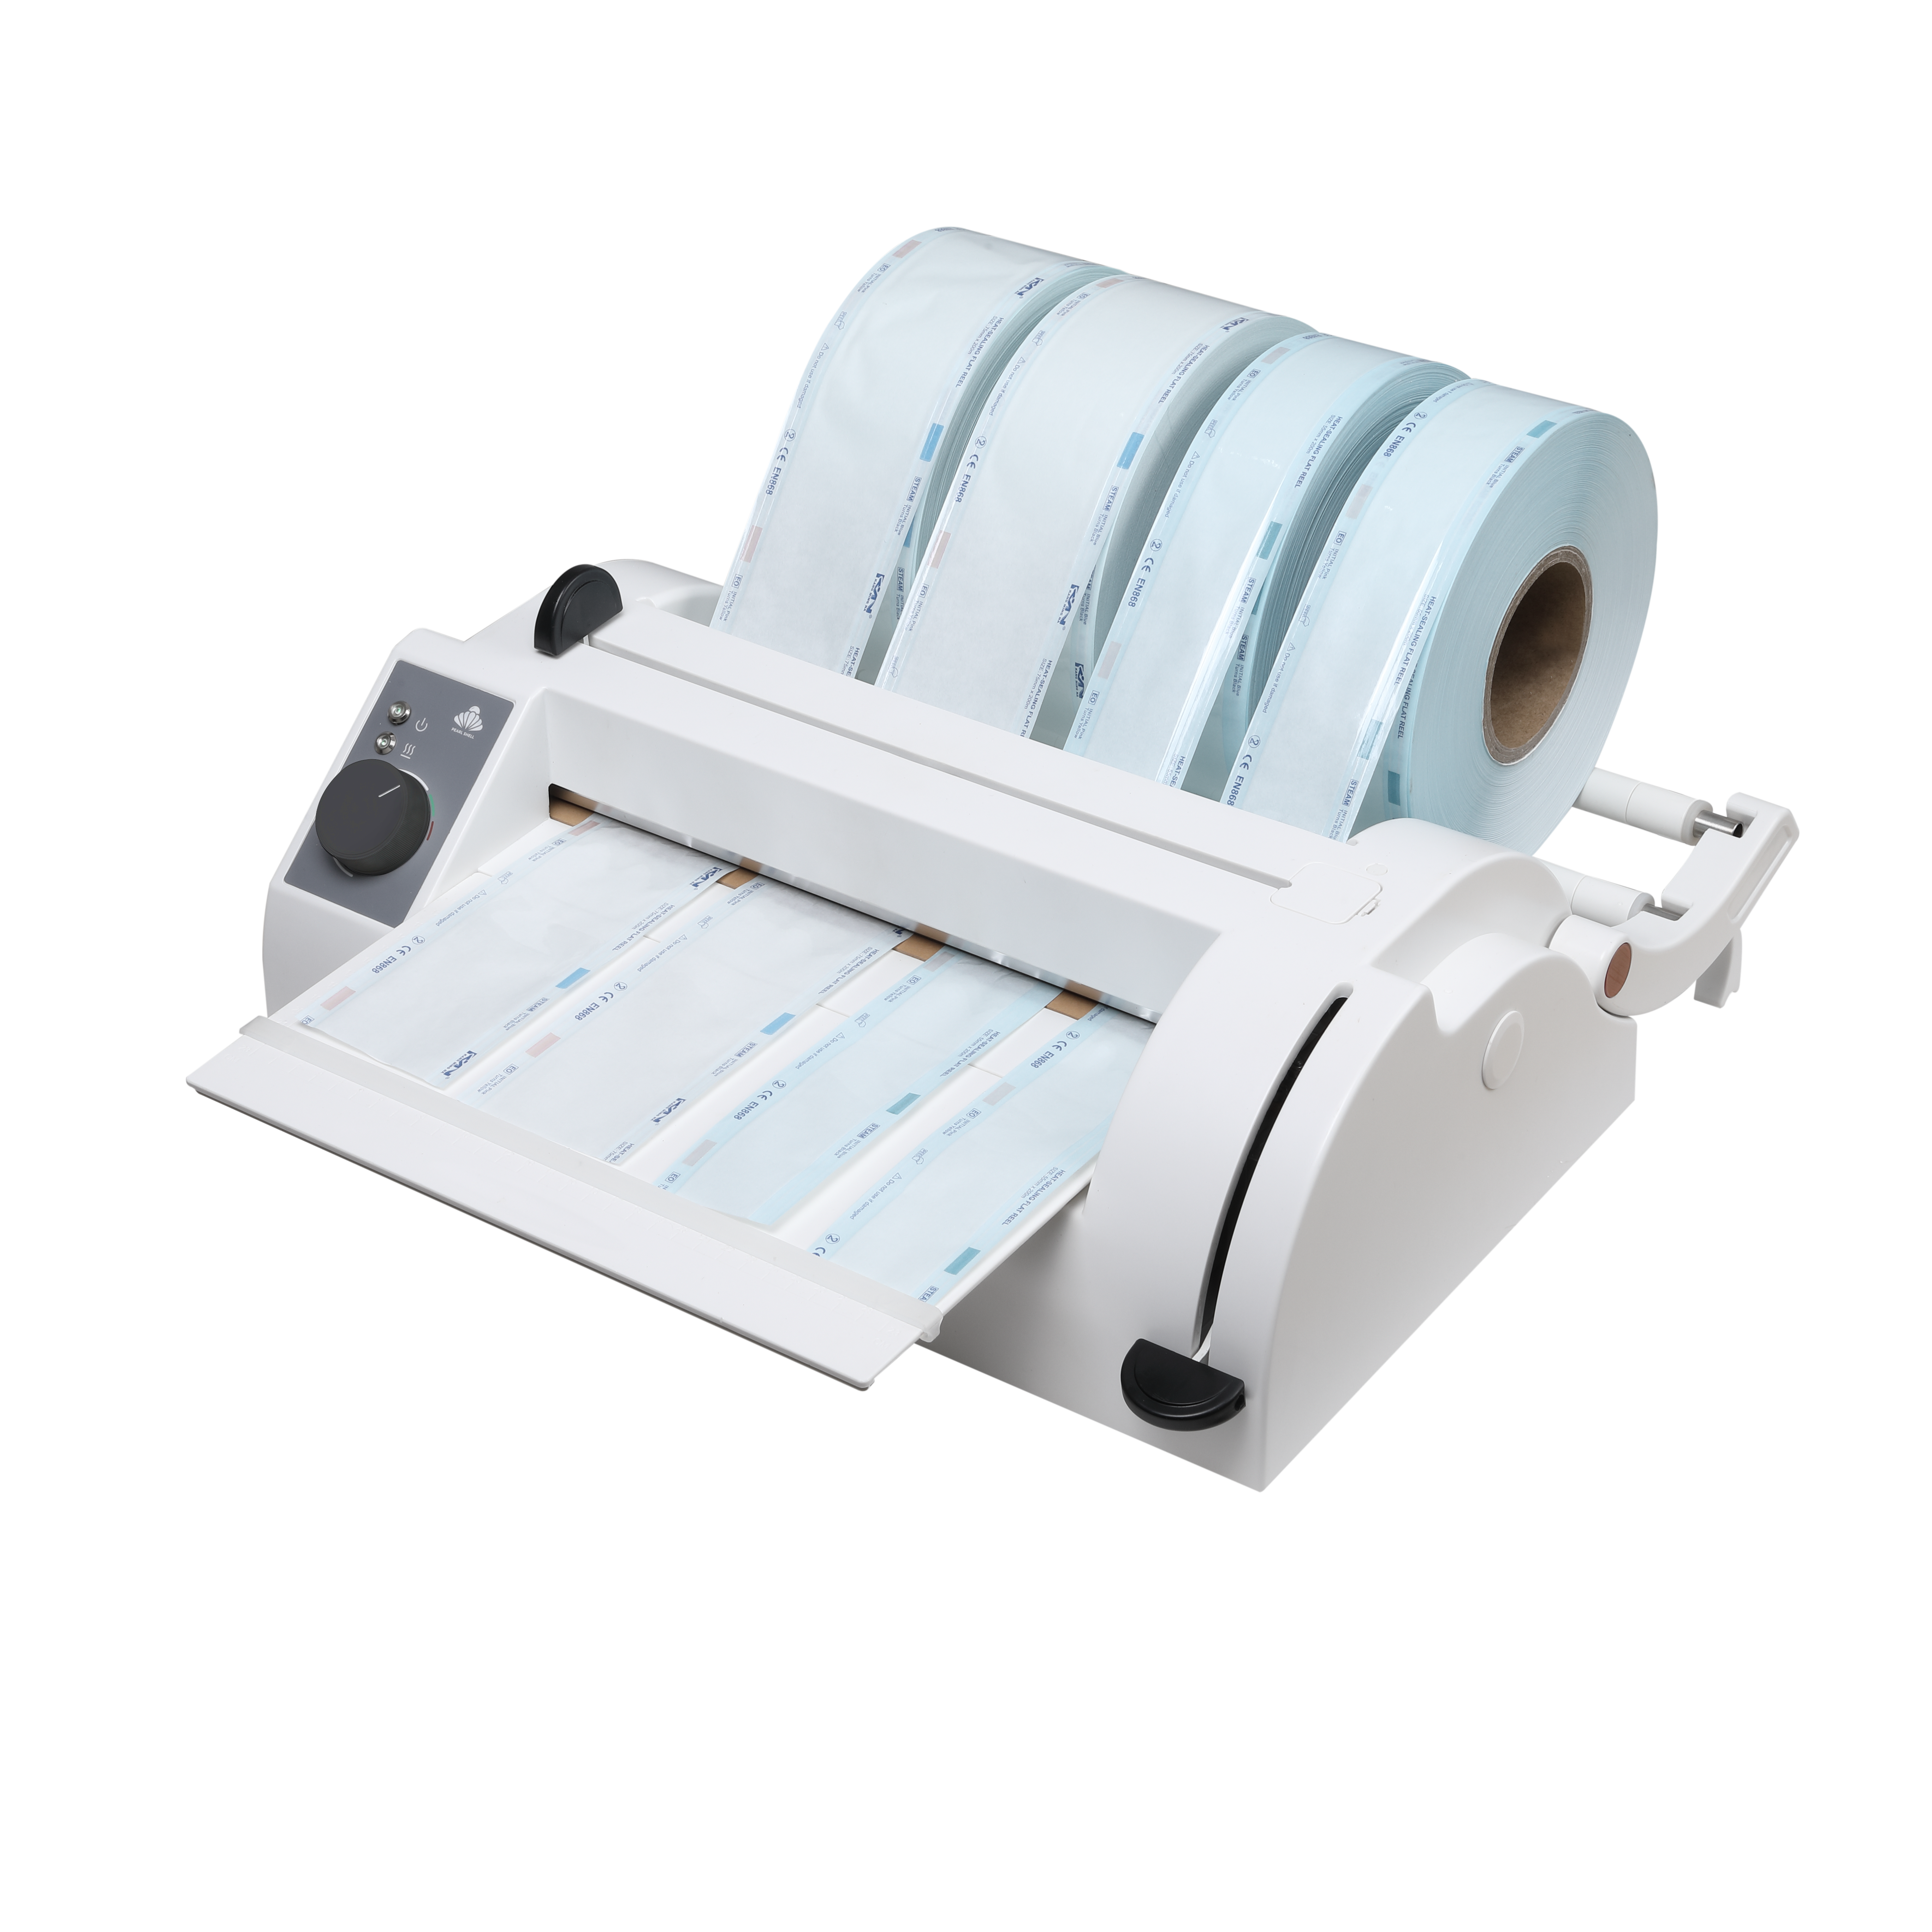 Double-slide Multi-functions Sealer For Dental Clinics